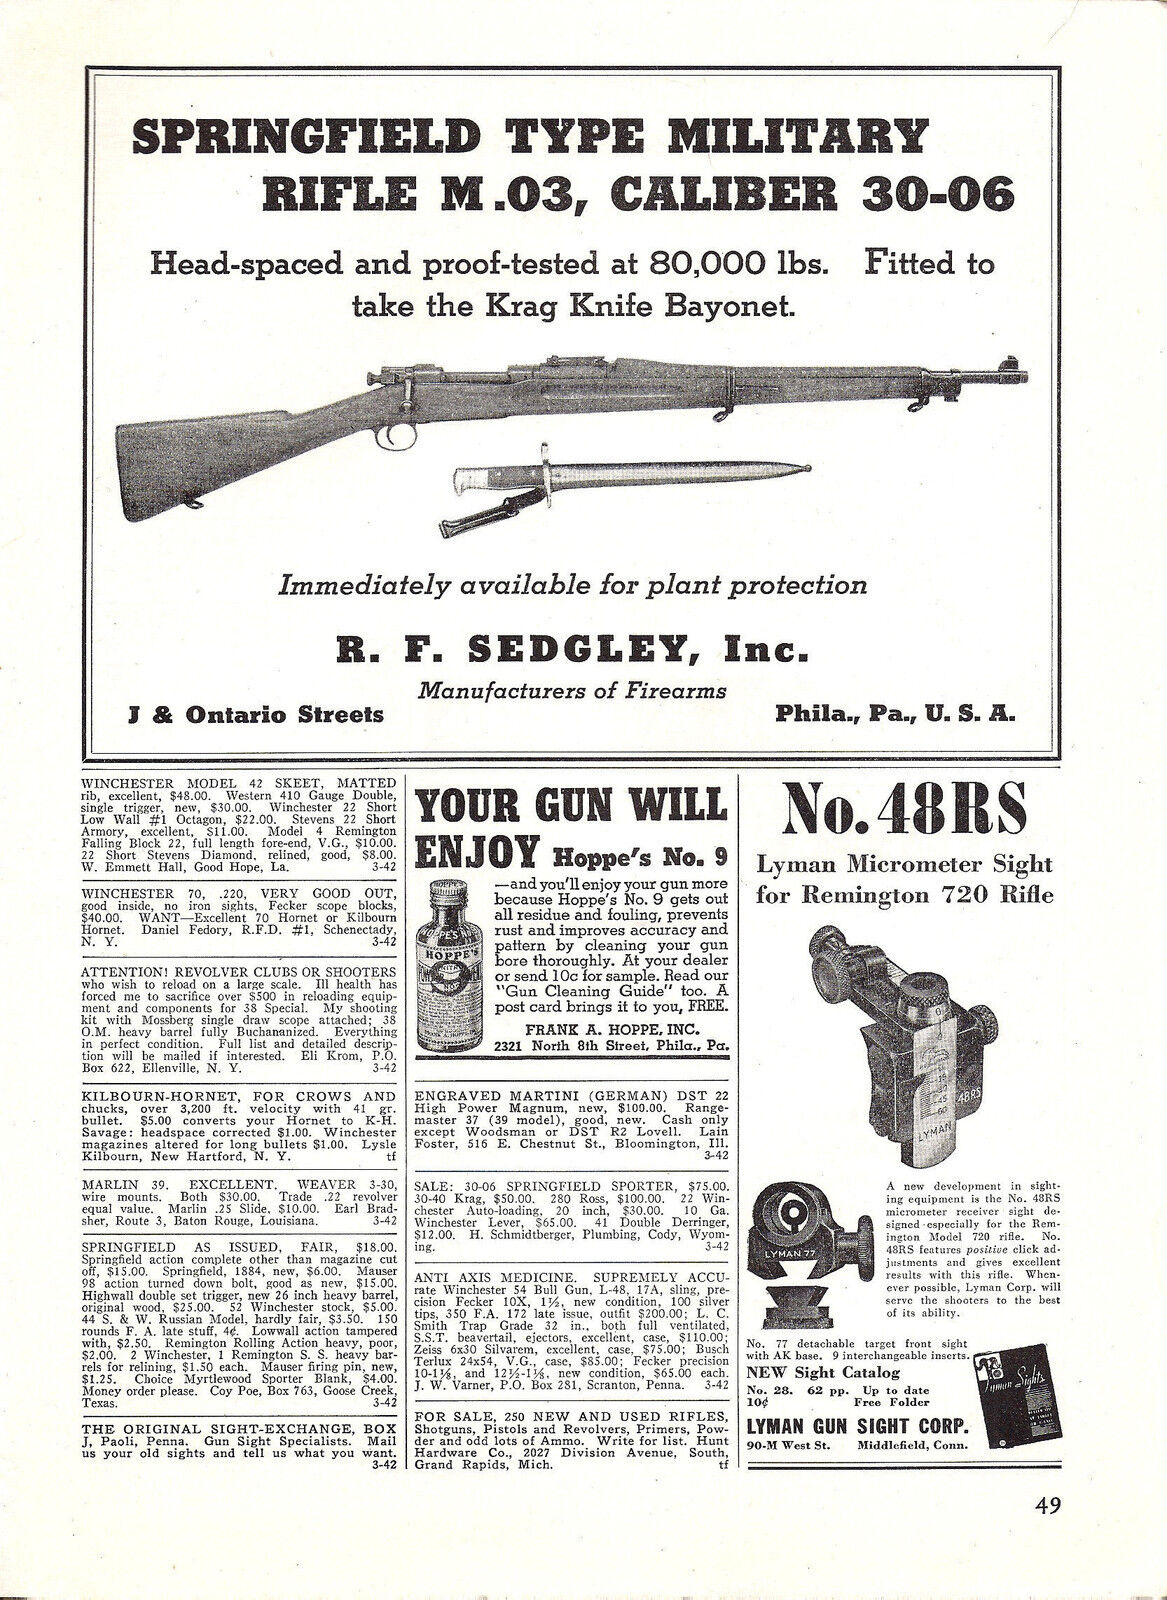 1942 WW II Springfield Type Military Rifle M.03 30-06 Rifle WWII WW2 PRINT AD